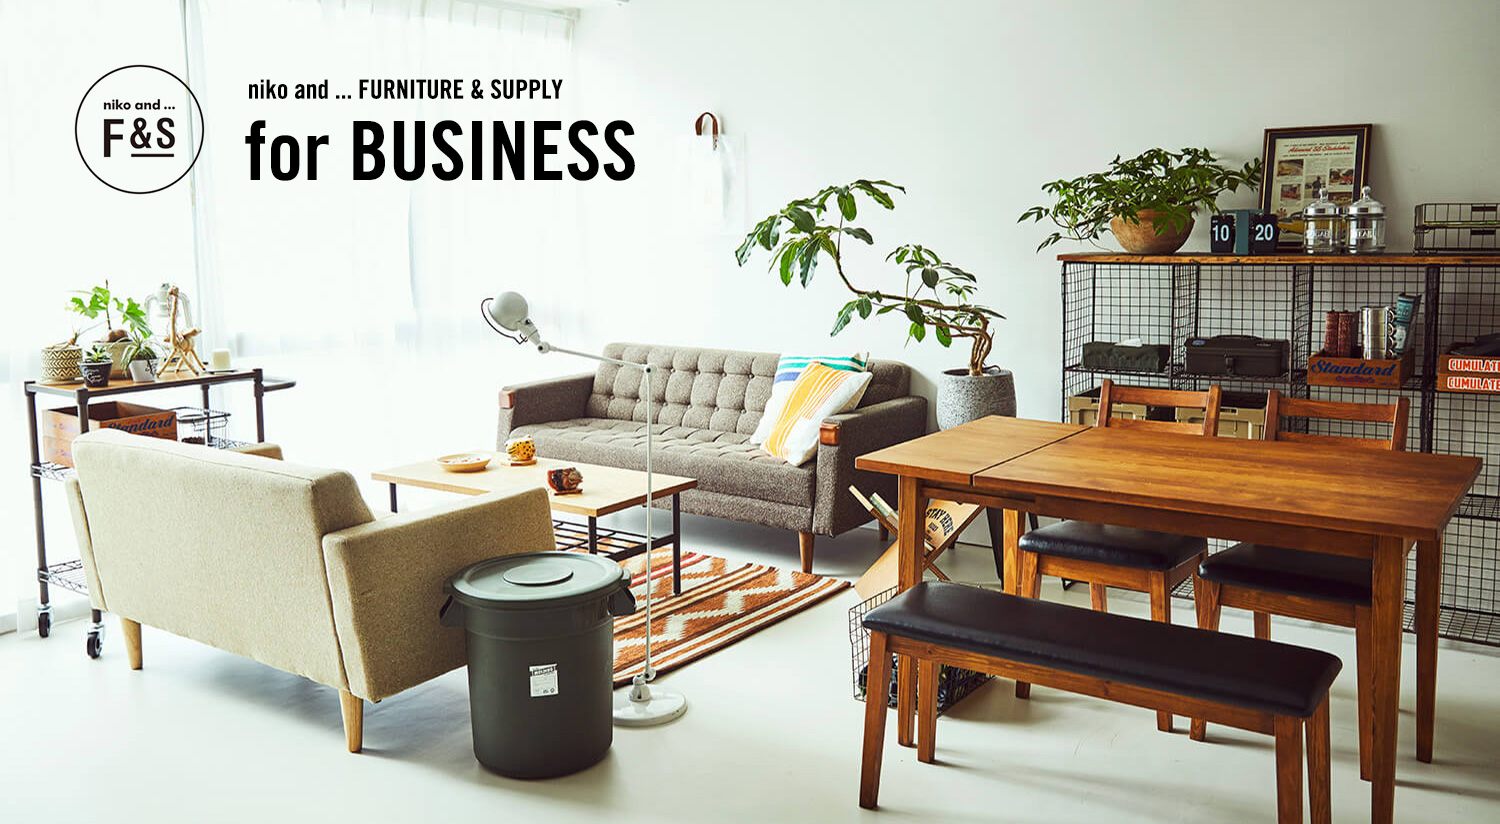 Niko And の家具 Niko And Furniture Supply のビジネス向けwebコンテンツを公開 株式会社アダストリアのプレスリリース